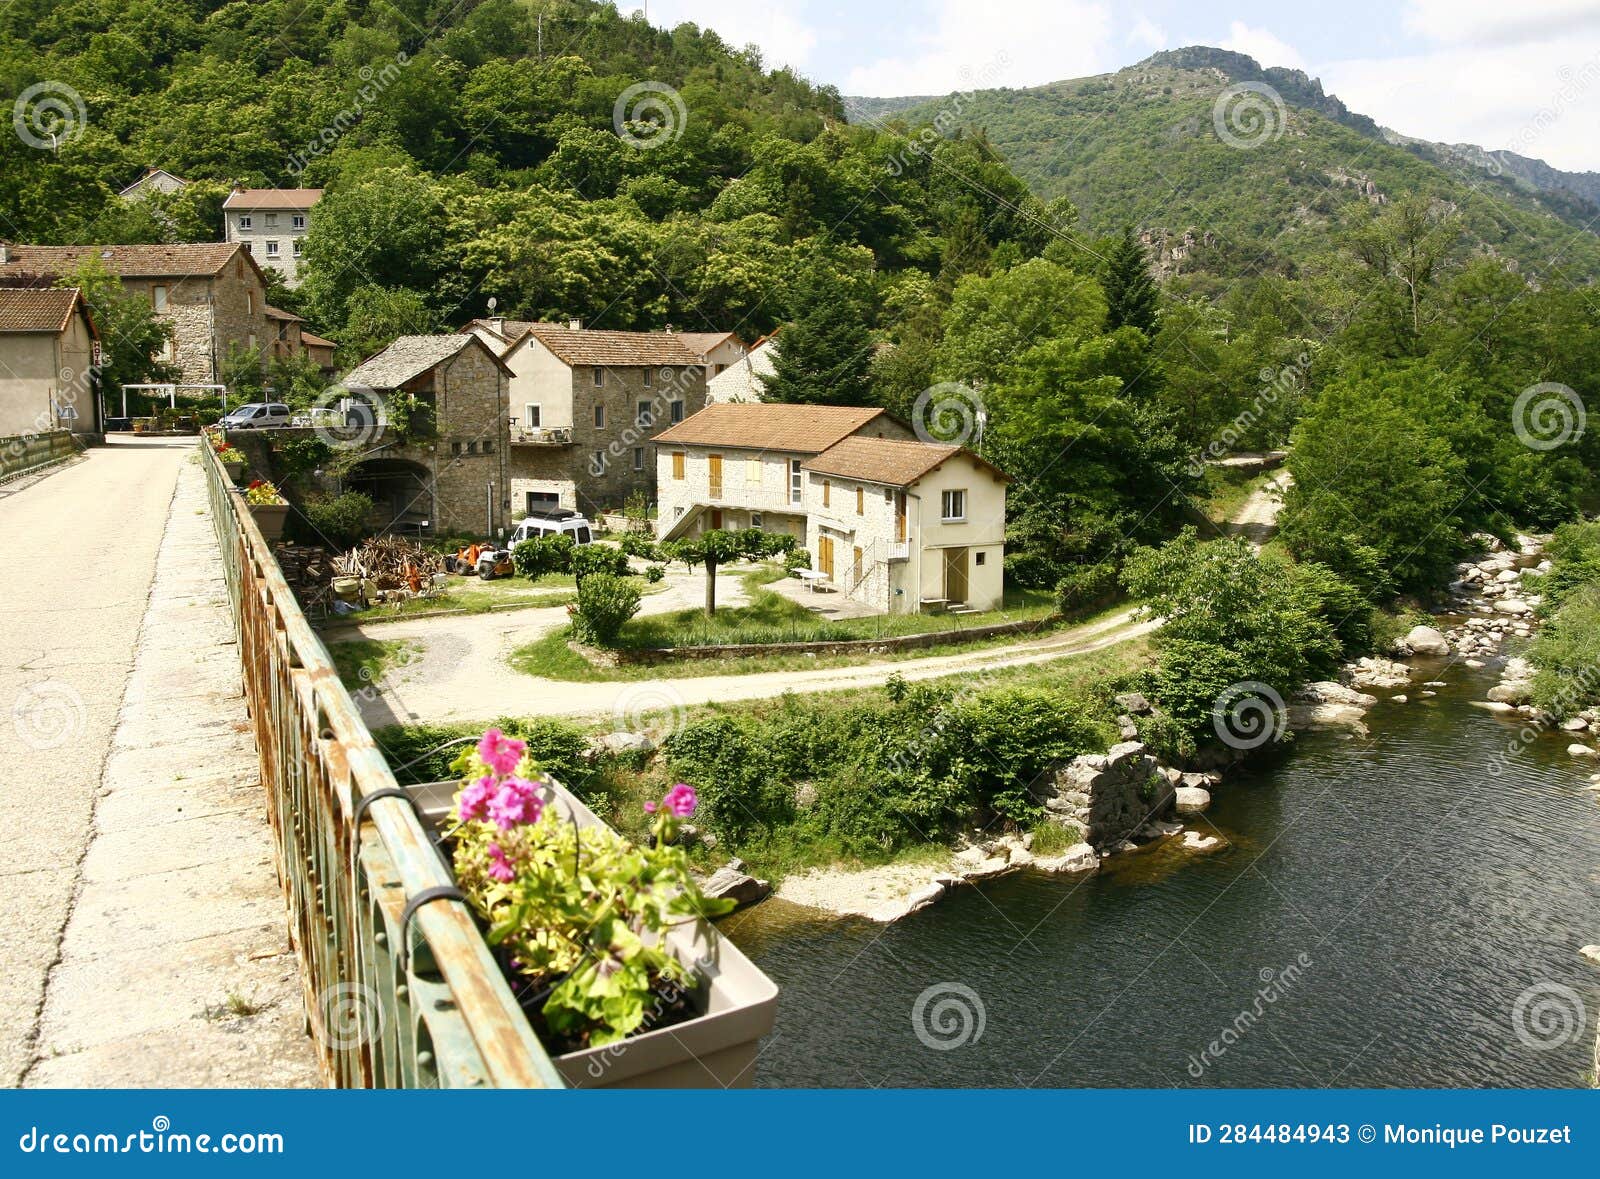 pied-de-borne a little village in france